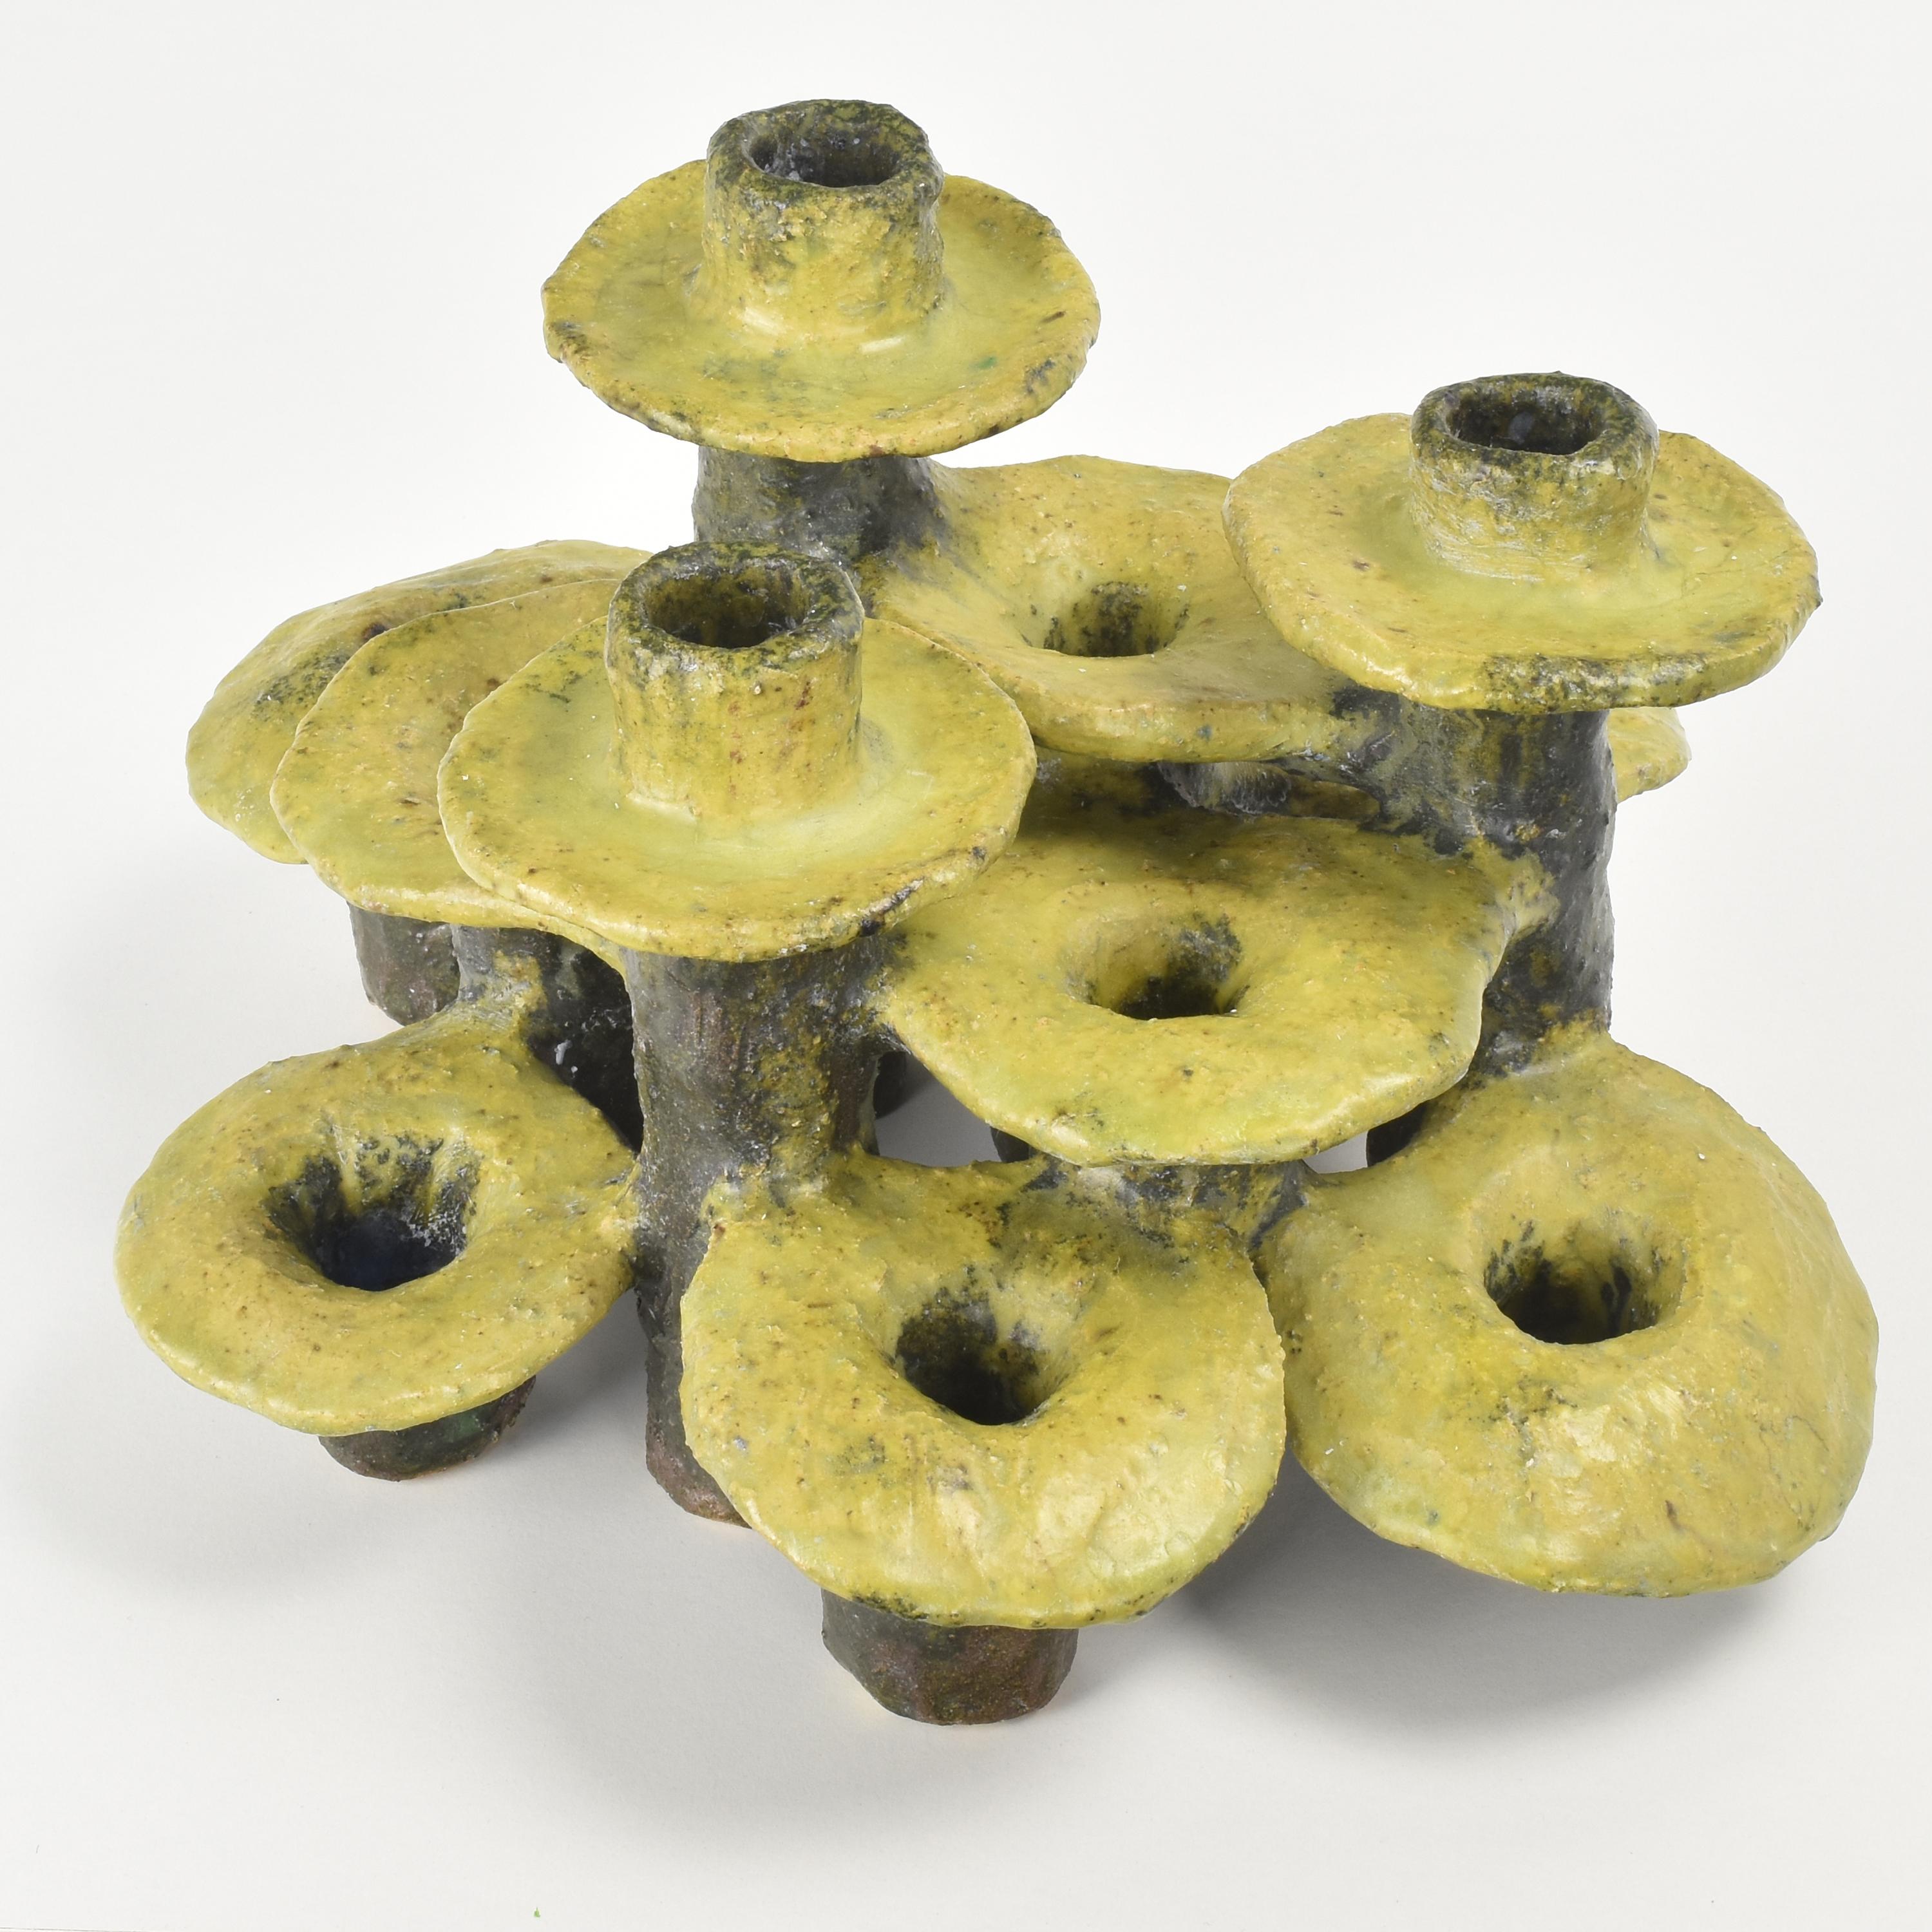 Dieses brutalistische Objekt hat ein einzigartiges und kreatives Design. Es besteht aus 12 Kerzenhaltern, die jeweils die Form eines Pilzes haben und in verschiedenen Ebenen angeordnet sind, um eine optisch ansprechende Komposition zu schaffen. Das